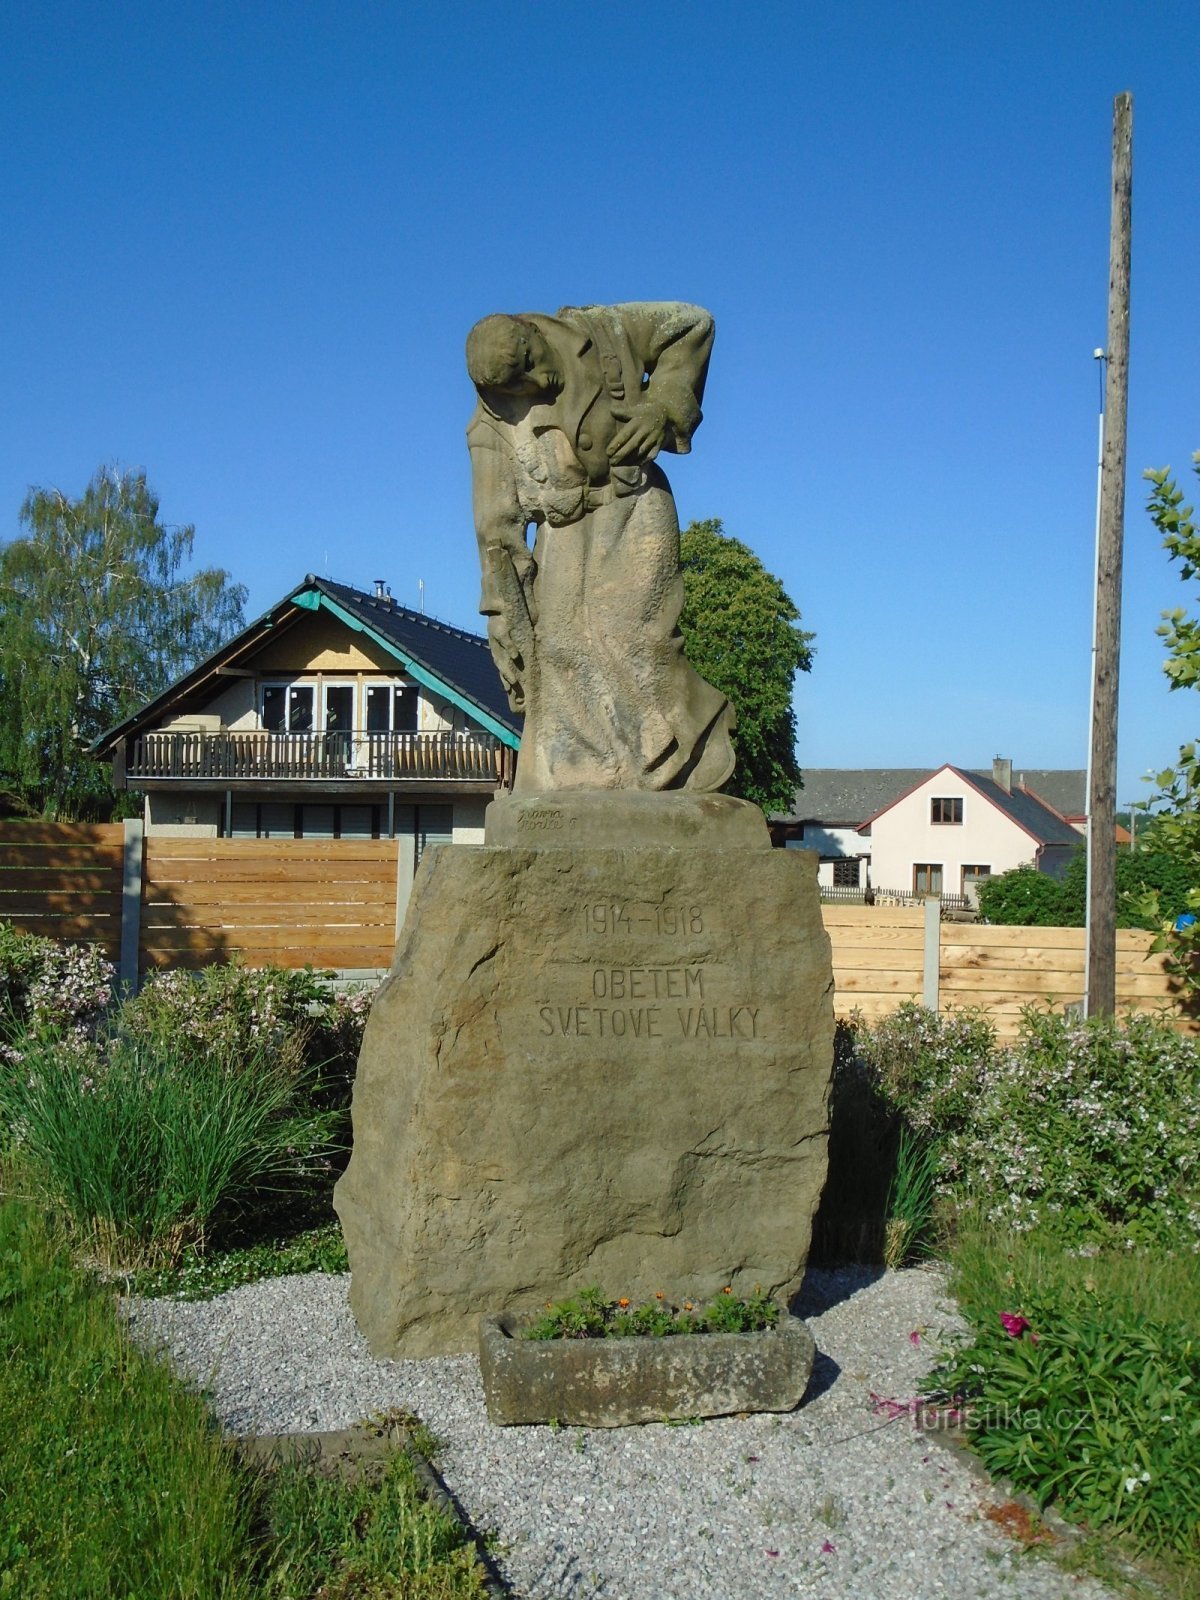 Đài tưởng niệm những người đã chết trong Chiến tranh thế giới thứ nhất (Čistěves)